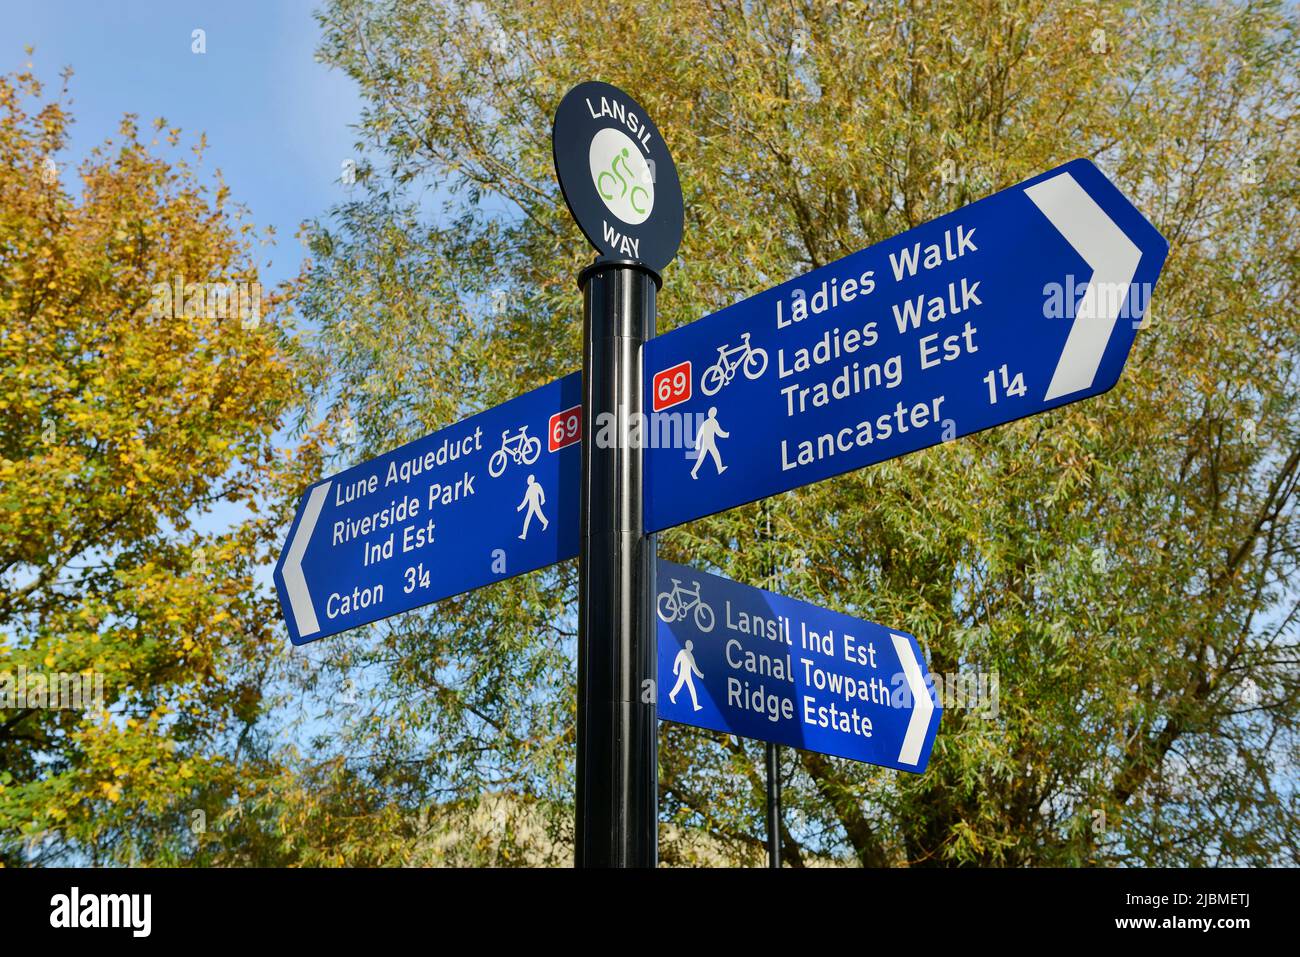 Un cartello sulla via lanais che indica vari percorsi ciclabili e a piedi nel centro di Lancaster, Regno Unito Foto Stock